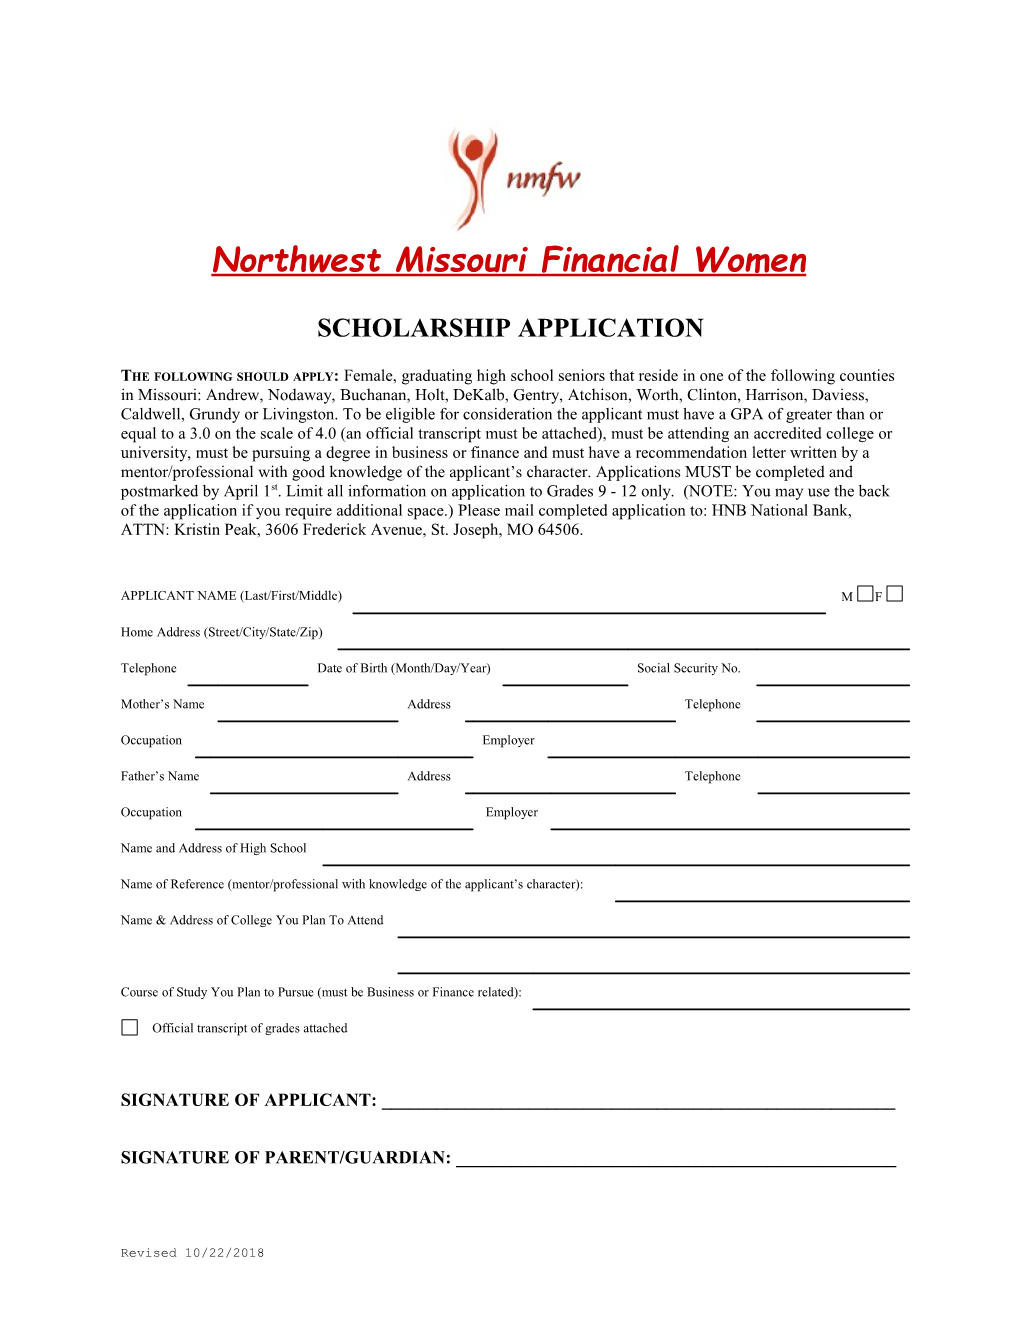 Northwest Missouri Financial Women